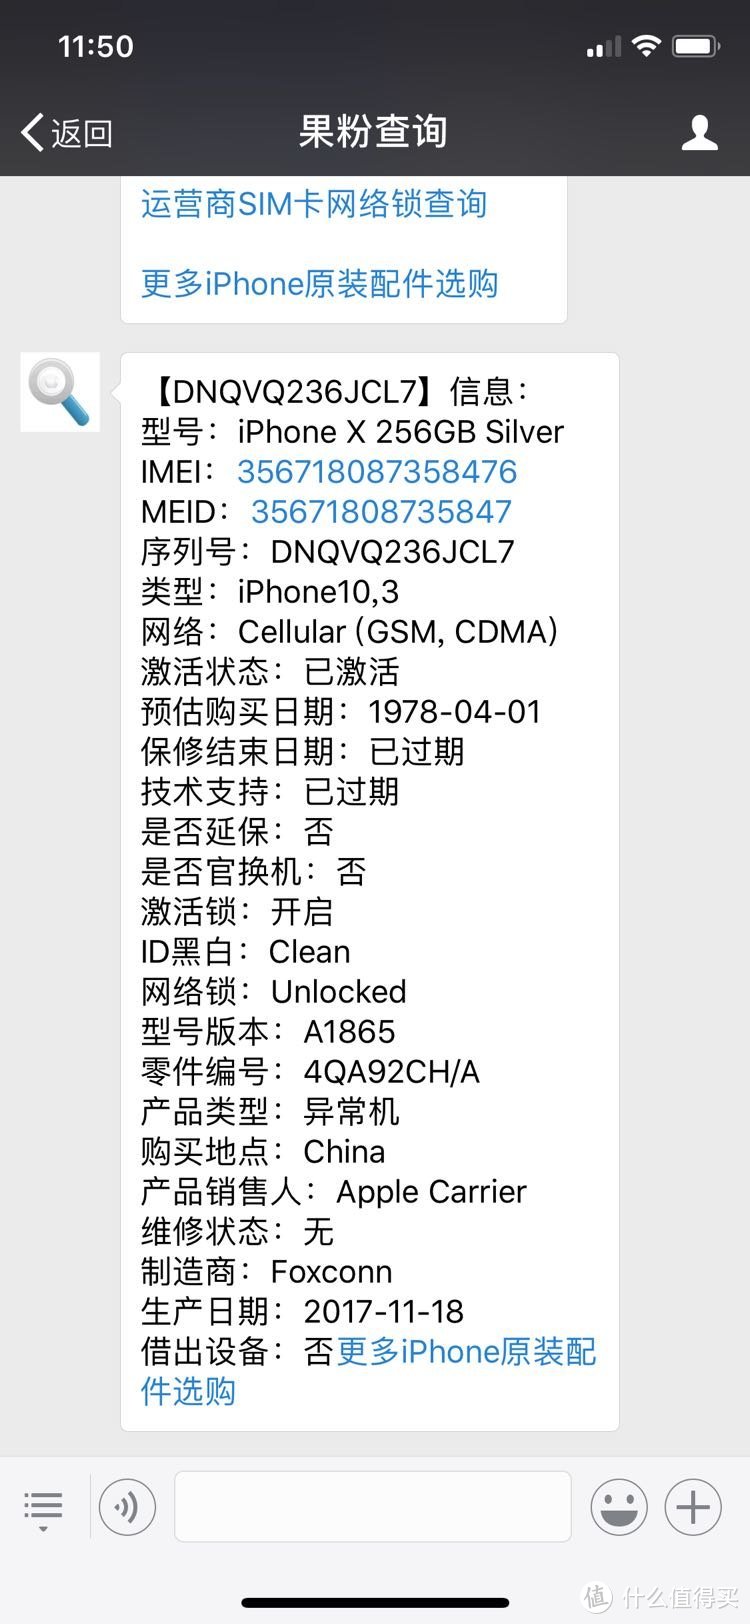 这是我购买的iPhoneX的序列号查询得到的信息